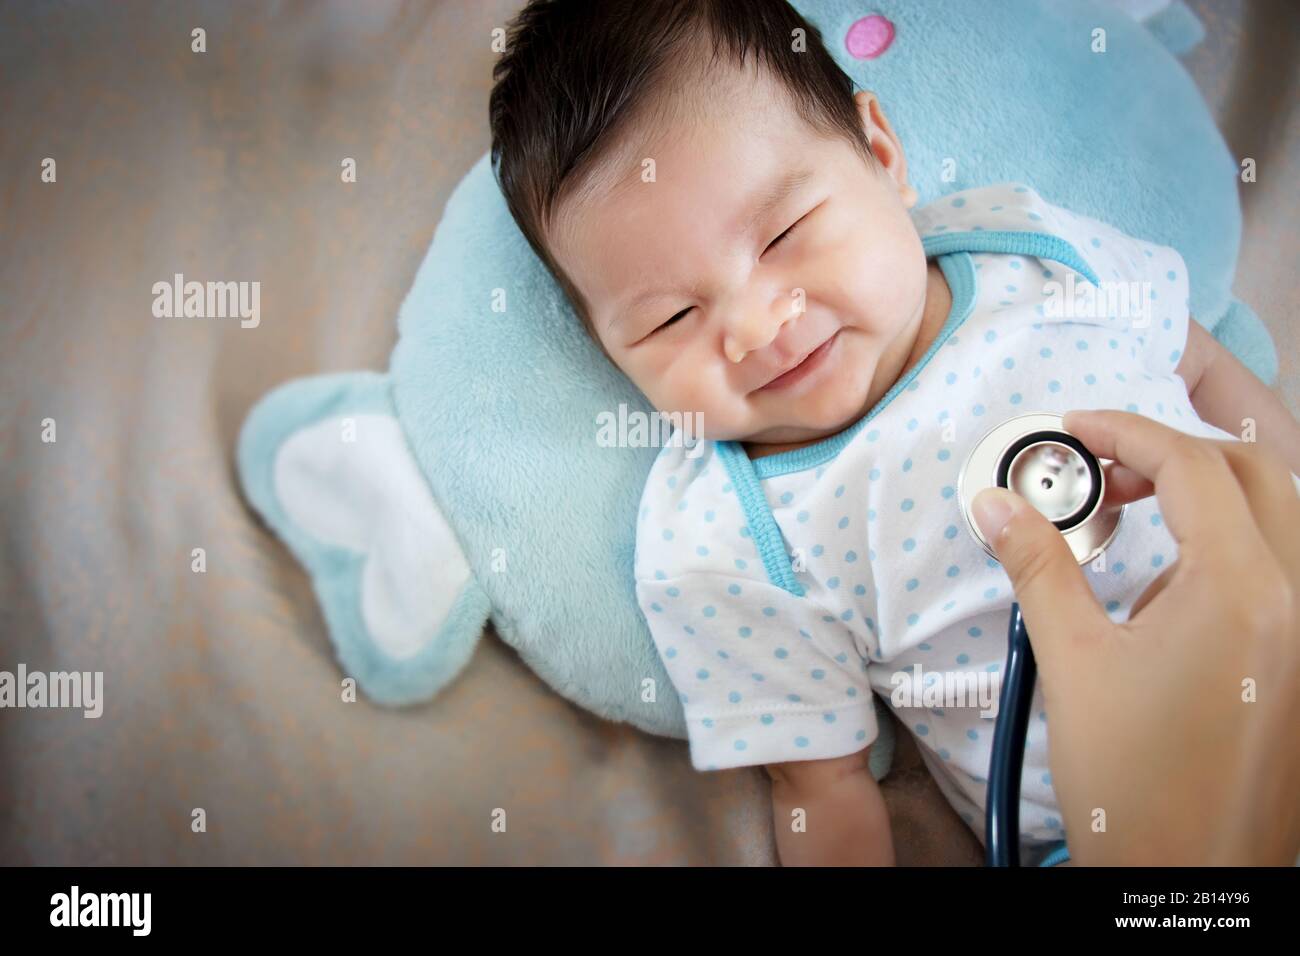 concepto de personas sanas. Bebé adorable asiático riendo con cara feliz para una buena salud en el tiempo de chequeo médico Foto de stock